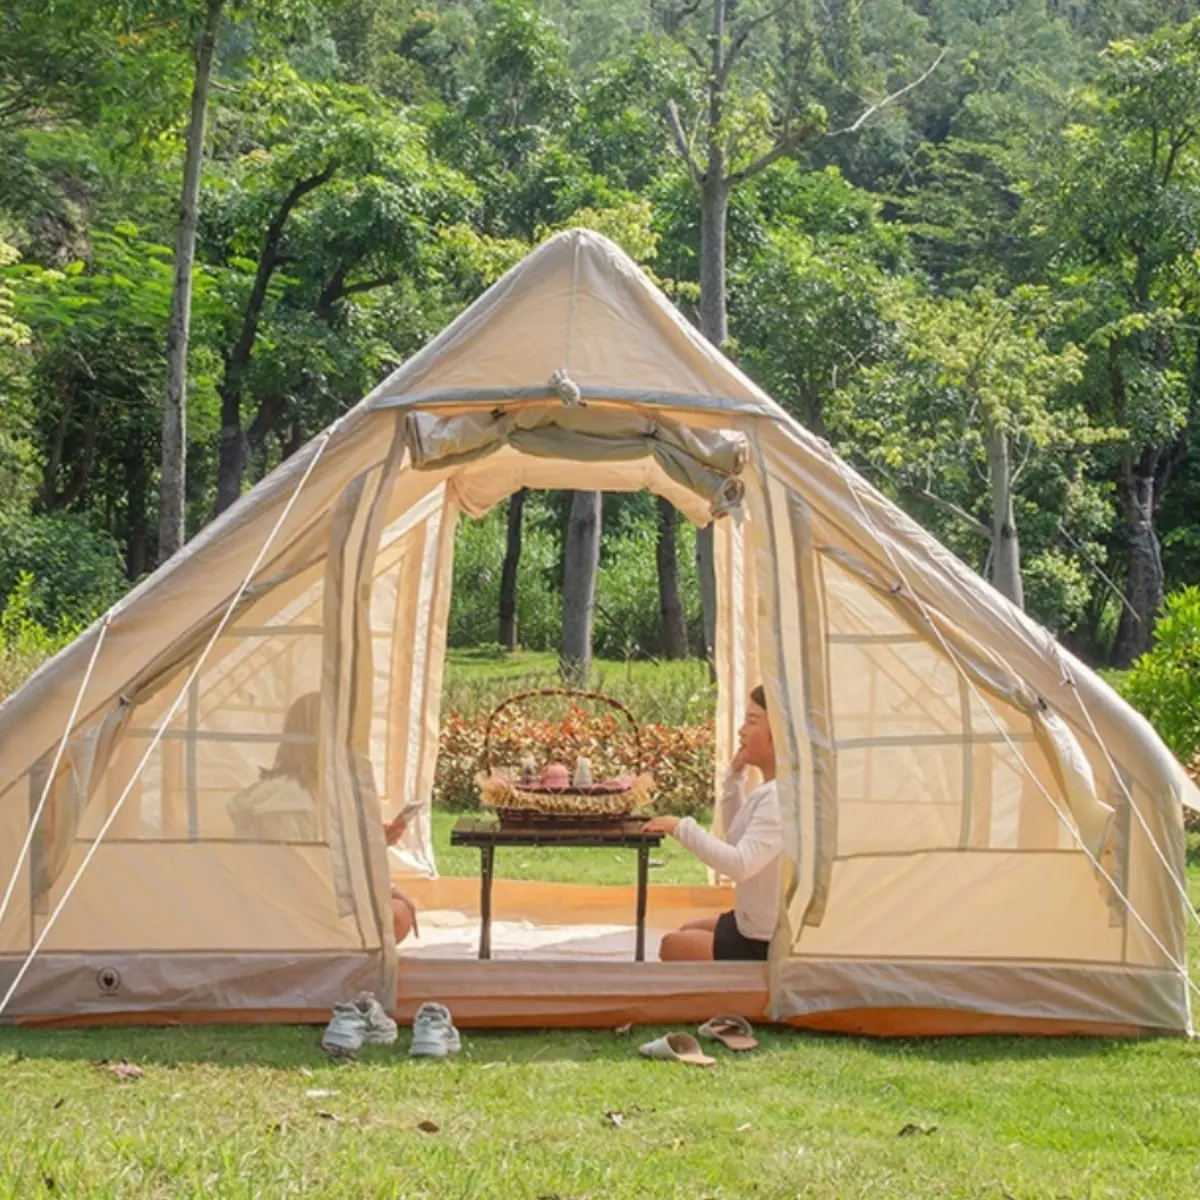 Tente gonflable de camping imperméable universelle toutes saisons pour l'extérieur